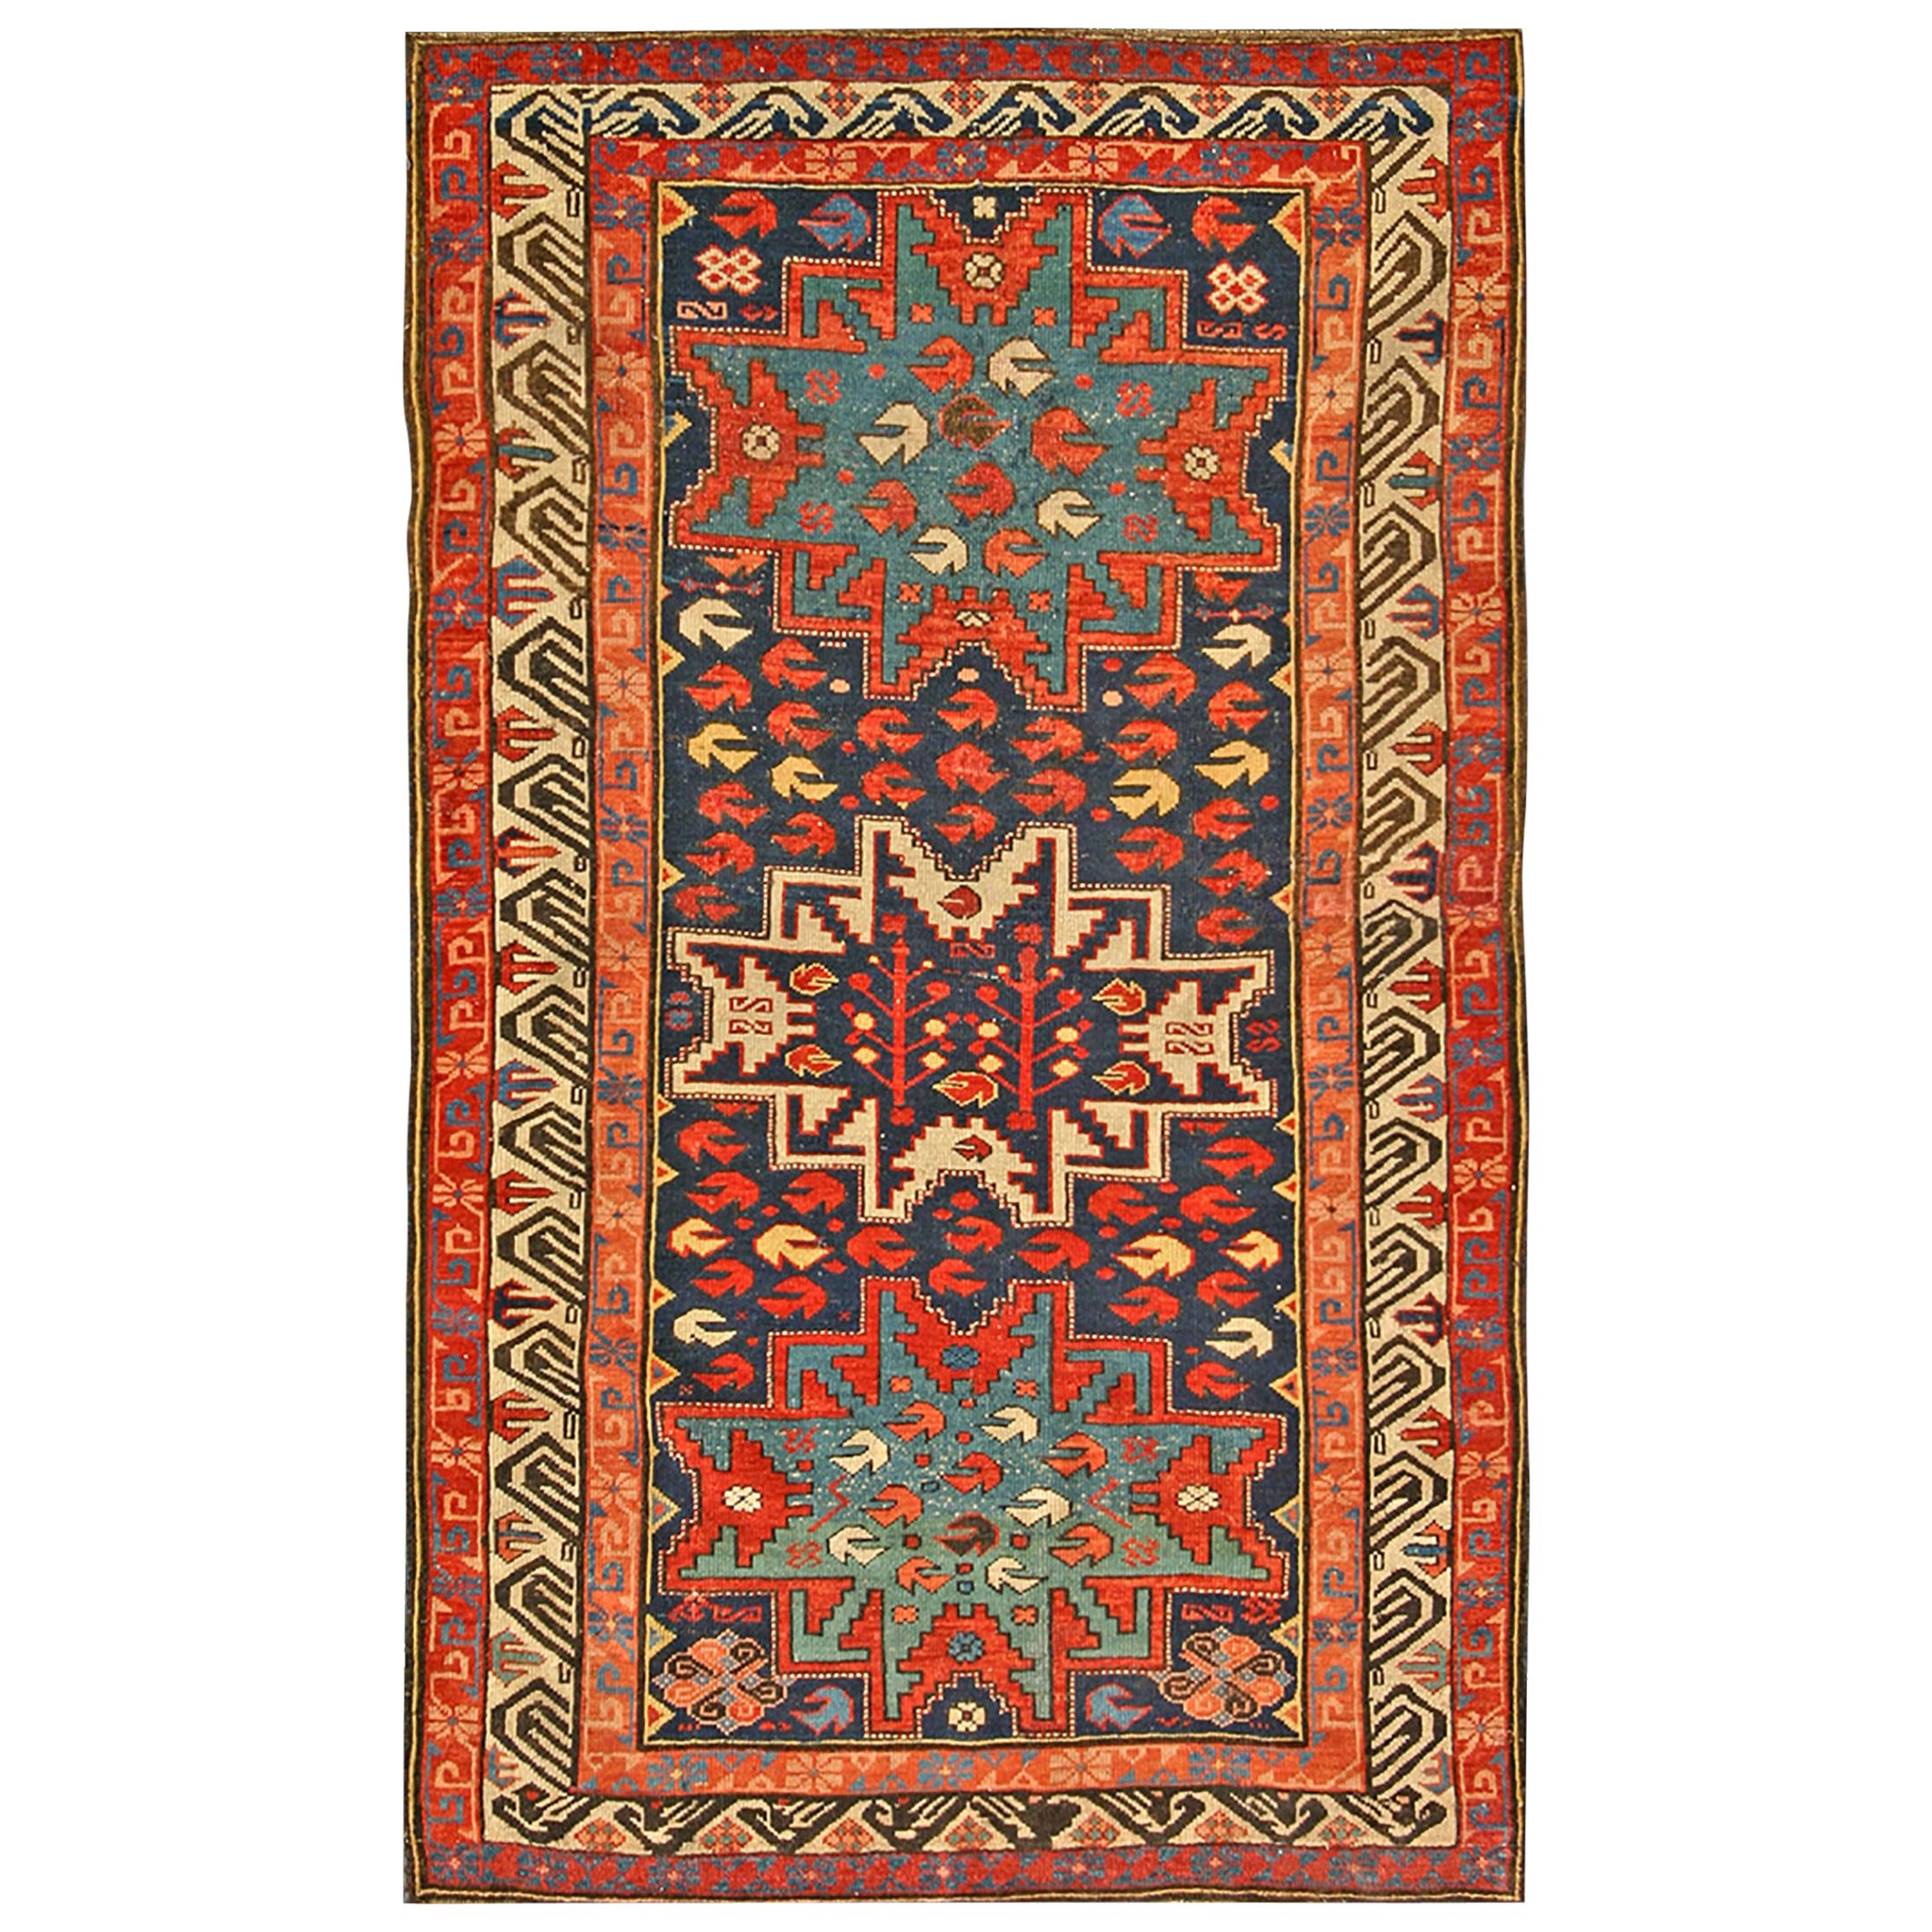 Kaukasischer Zeychor-Teppich des 19. Jahrhunderts ( 3'8" x 5'10" - 112 x 178 )